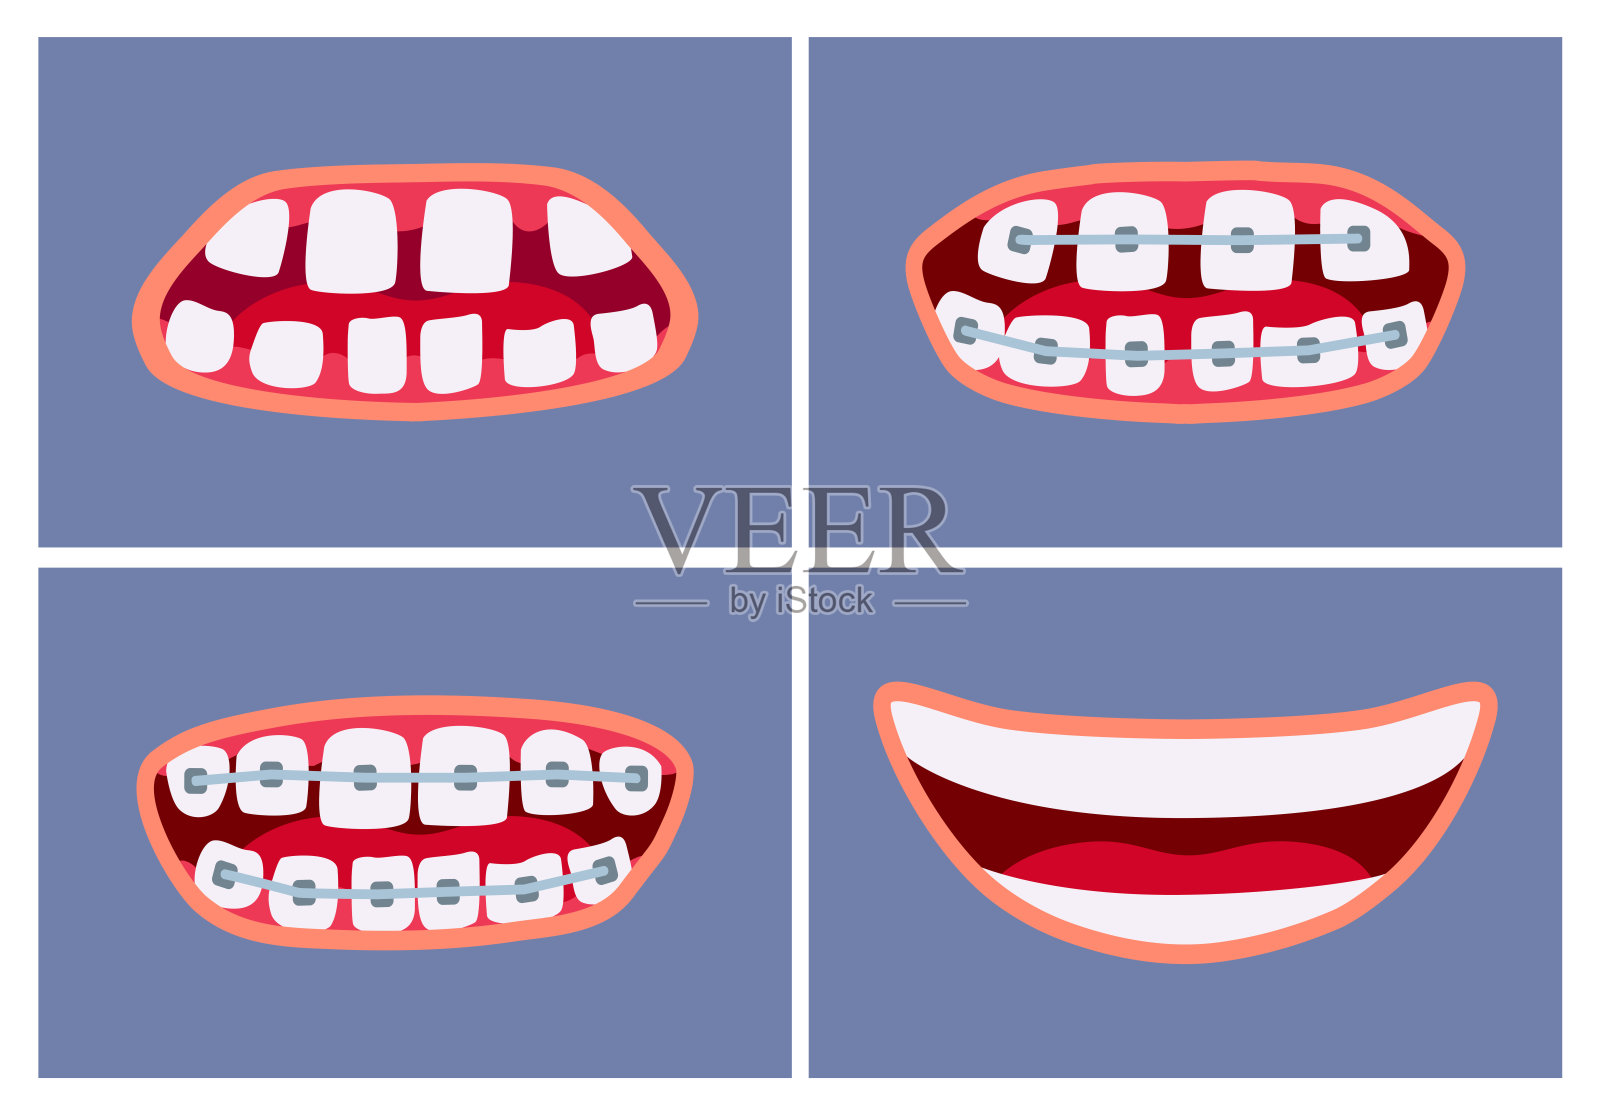 使用牙套前后的口腔。牙齿矫正治疗。插画图片素材